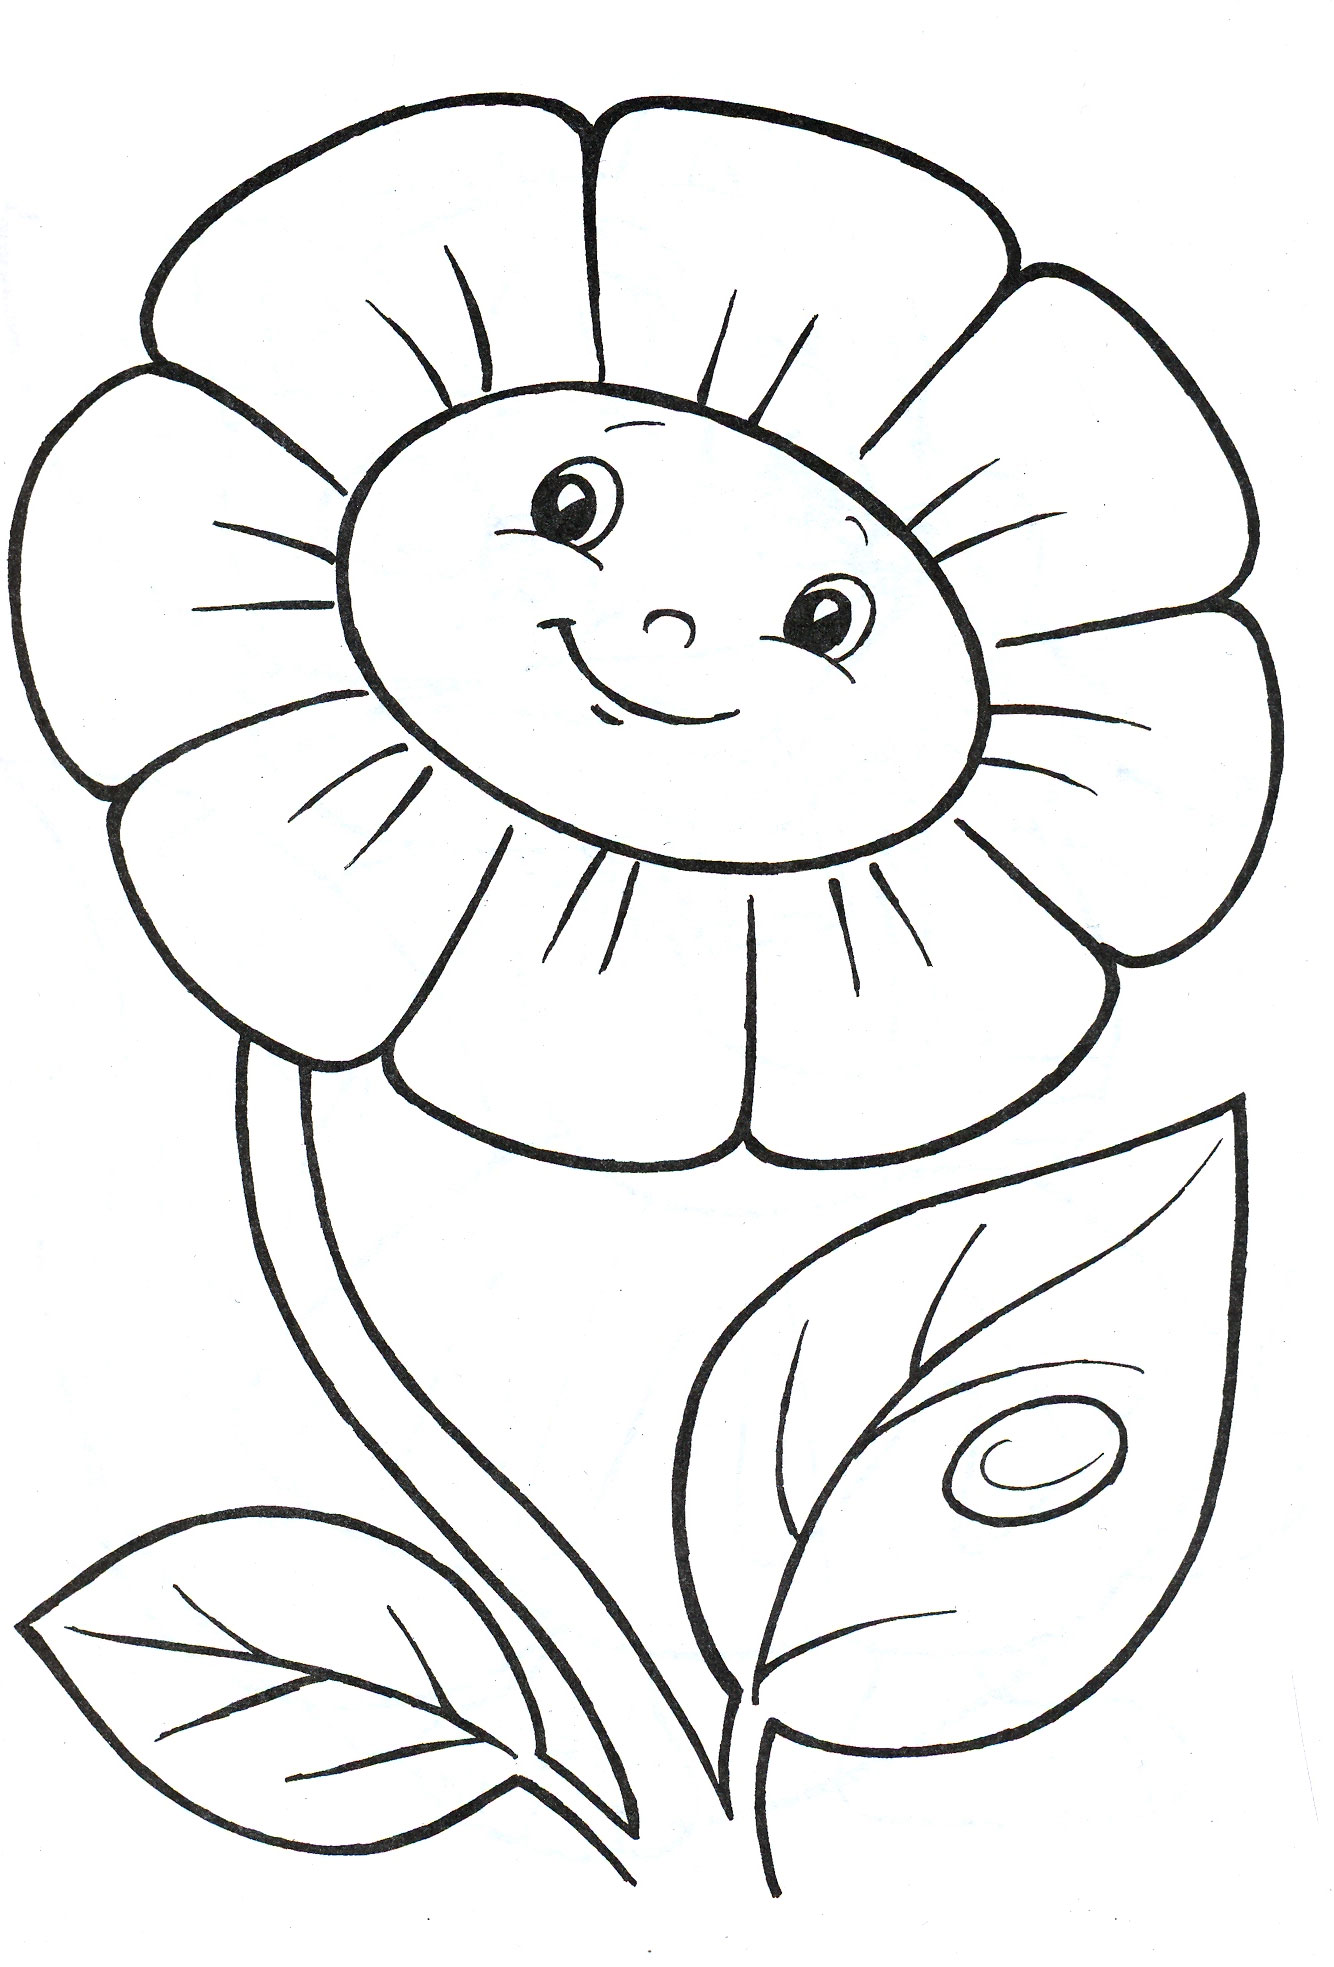 Раскраска Ромашка Распечатать бесплатно | Рисунки цветов, Раскраски, Раскраска для детей